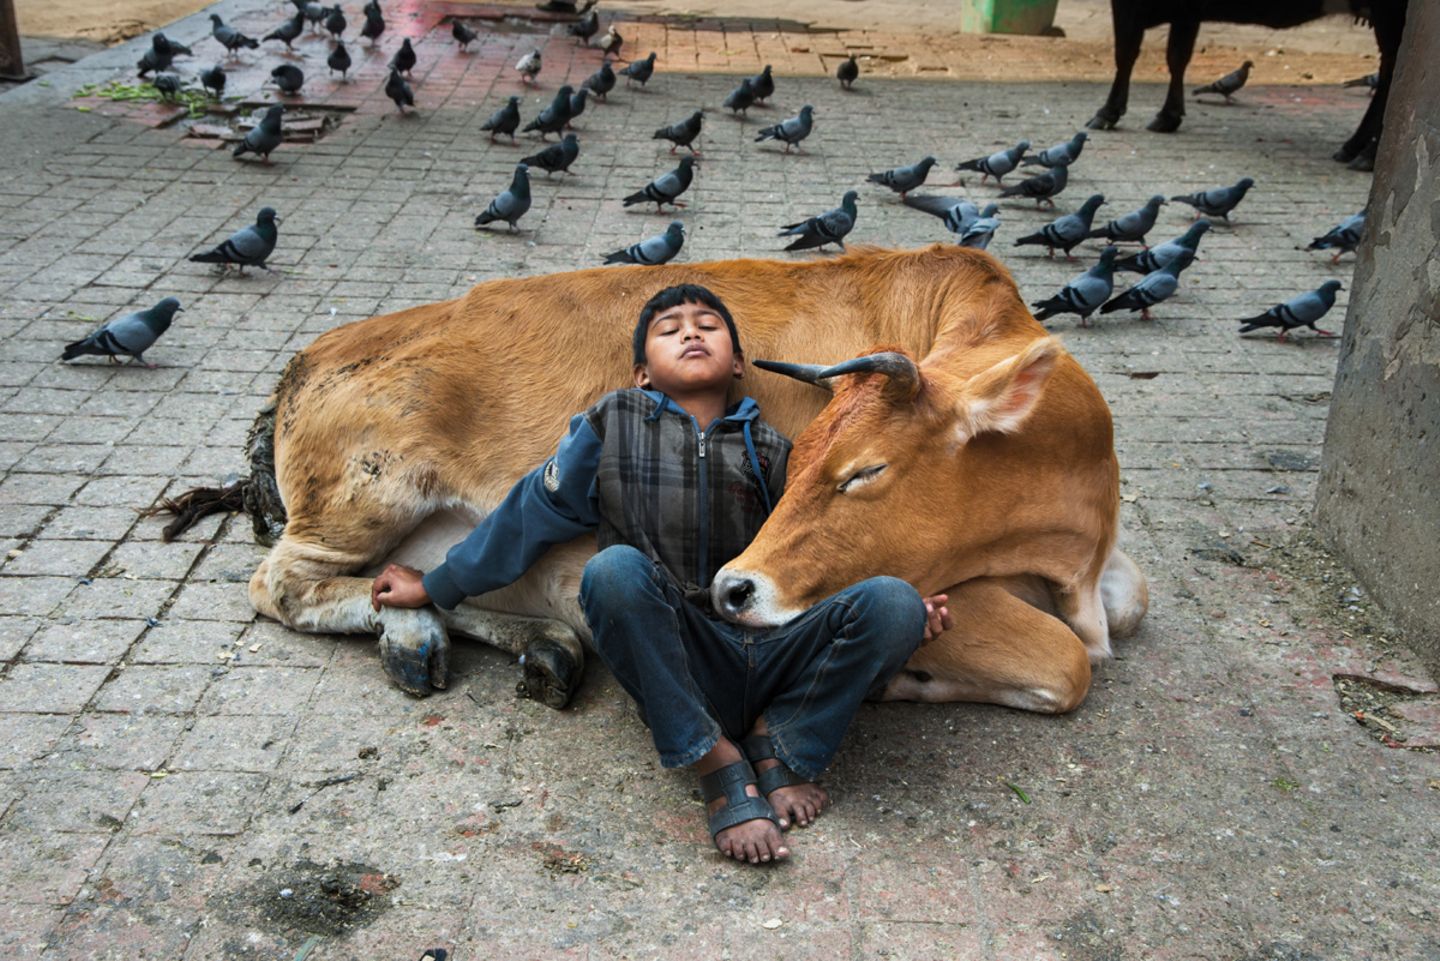 Animals von Steve McCurry